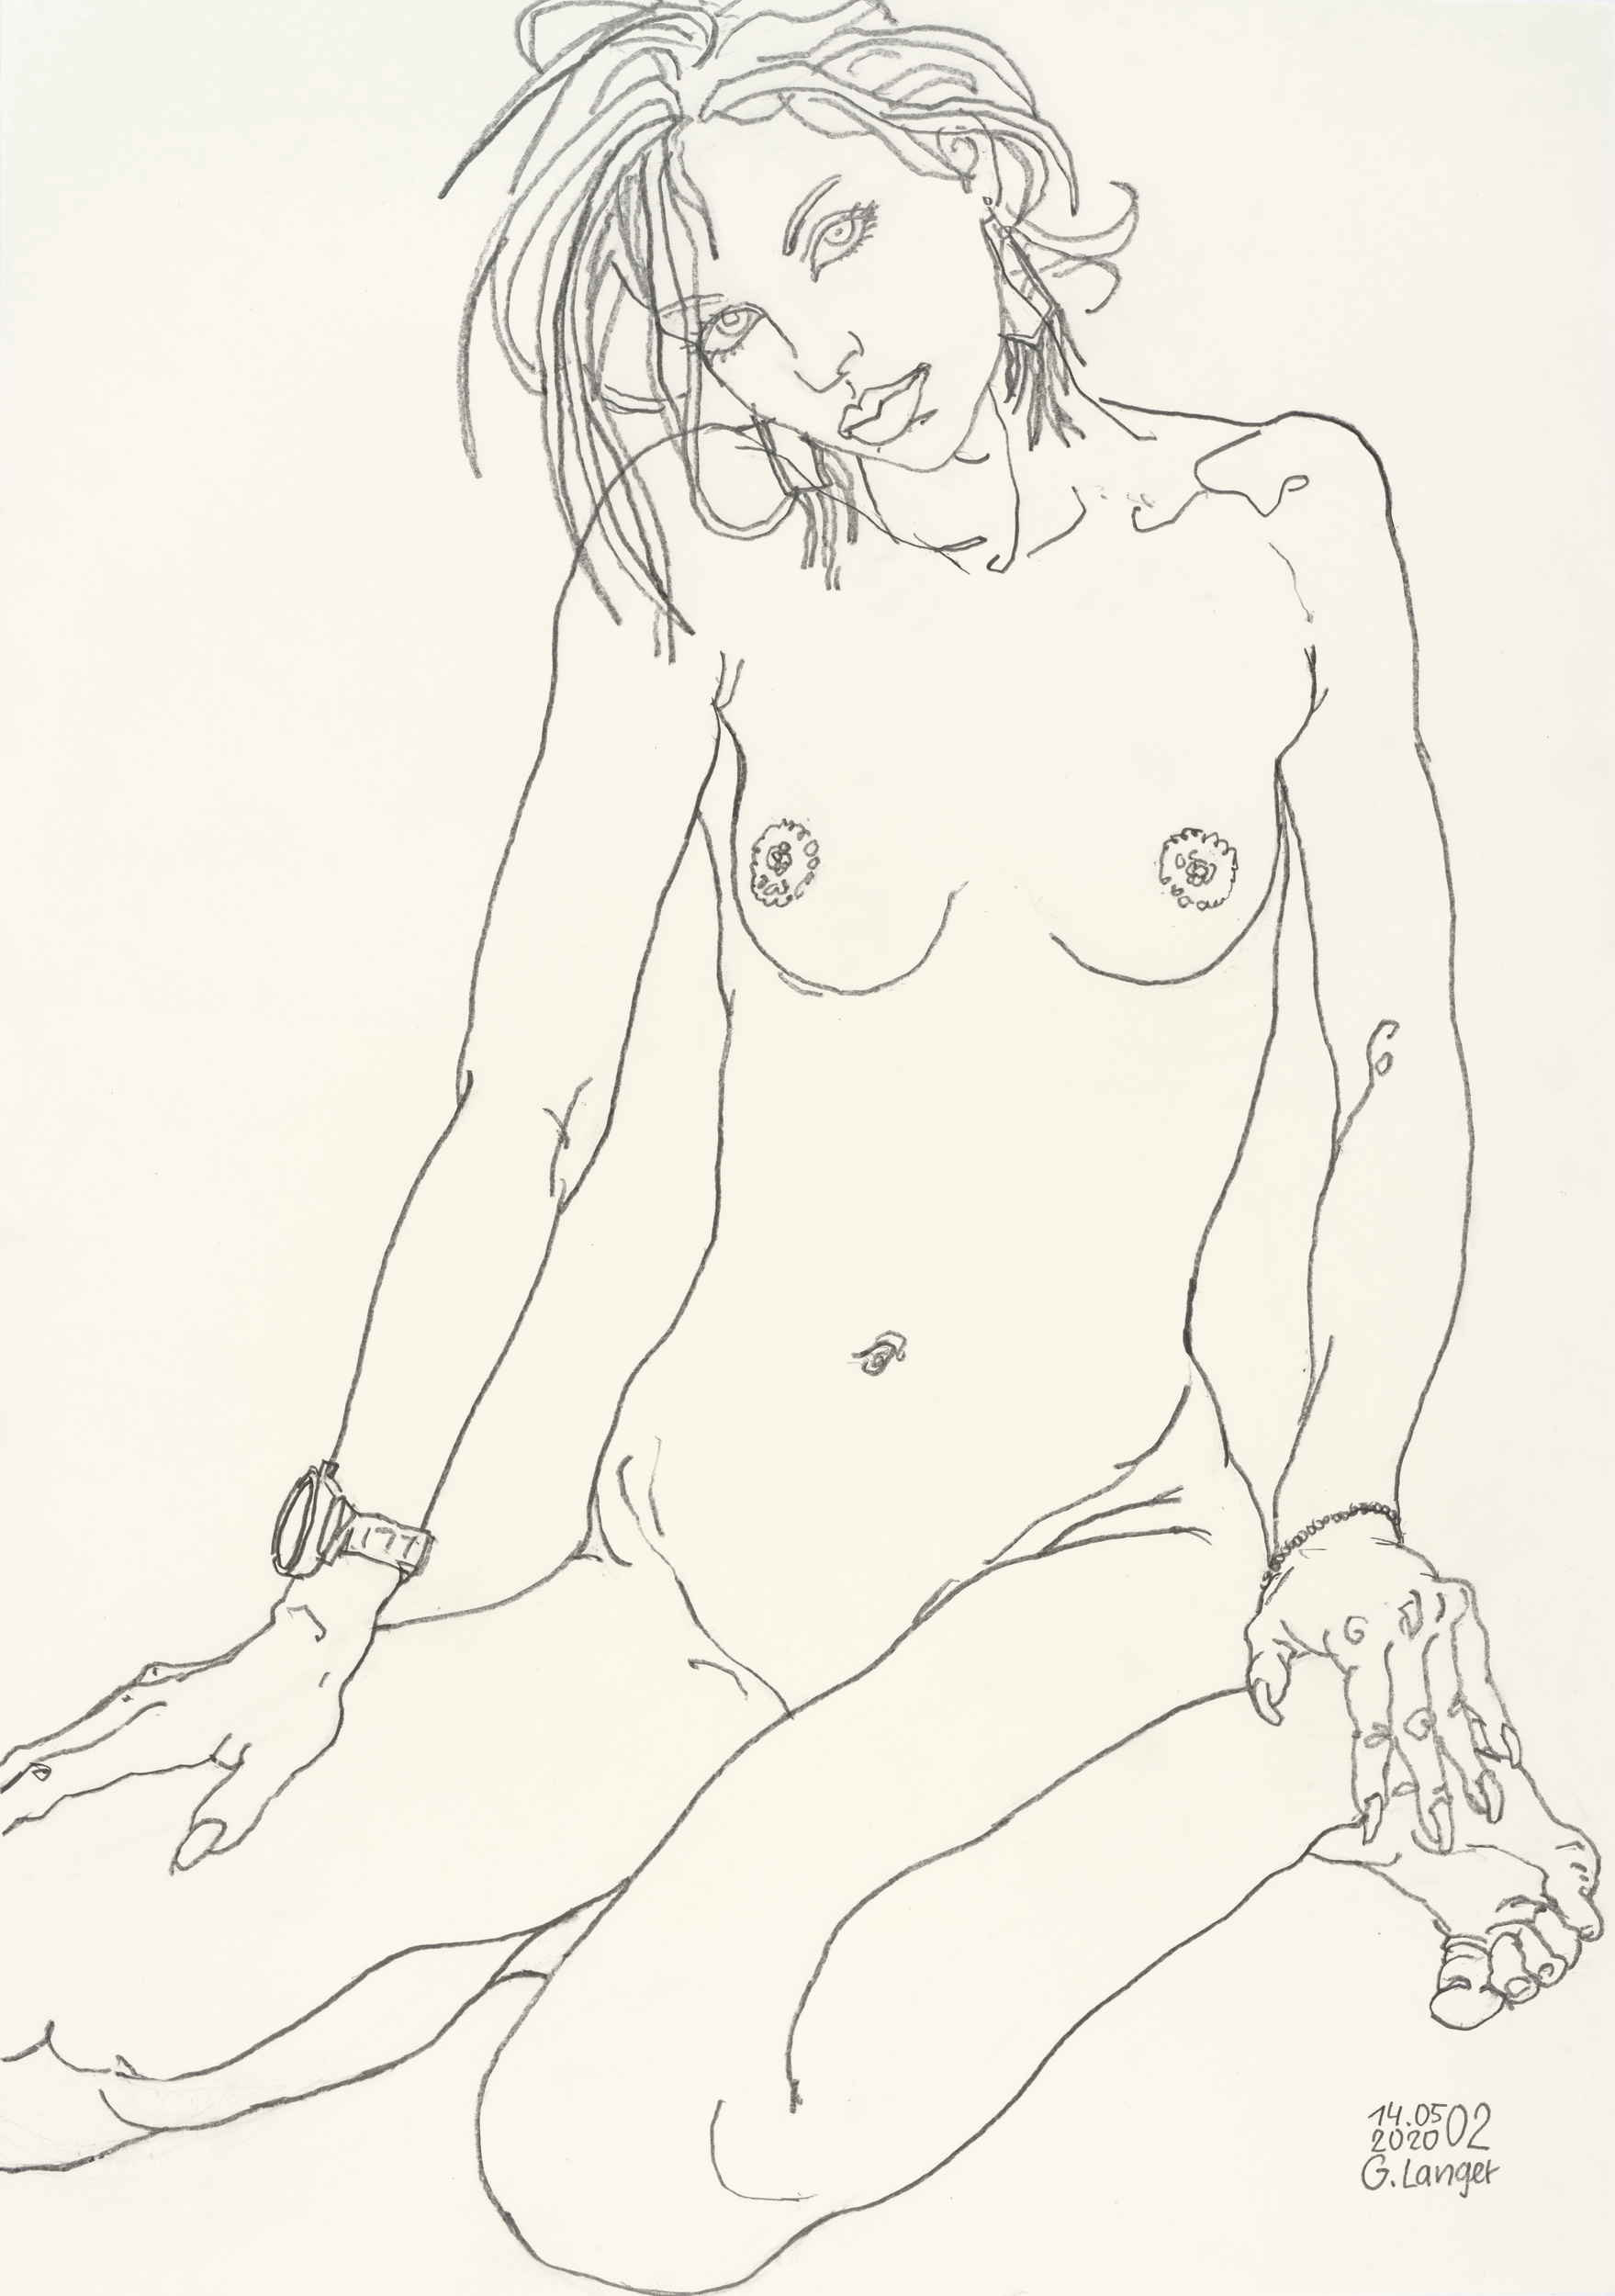 Gunter Langer, Sitzender Mädchenakt, Liebe, 2020, Bleistiftzeichnung, Karton, 100 x 70 cm